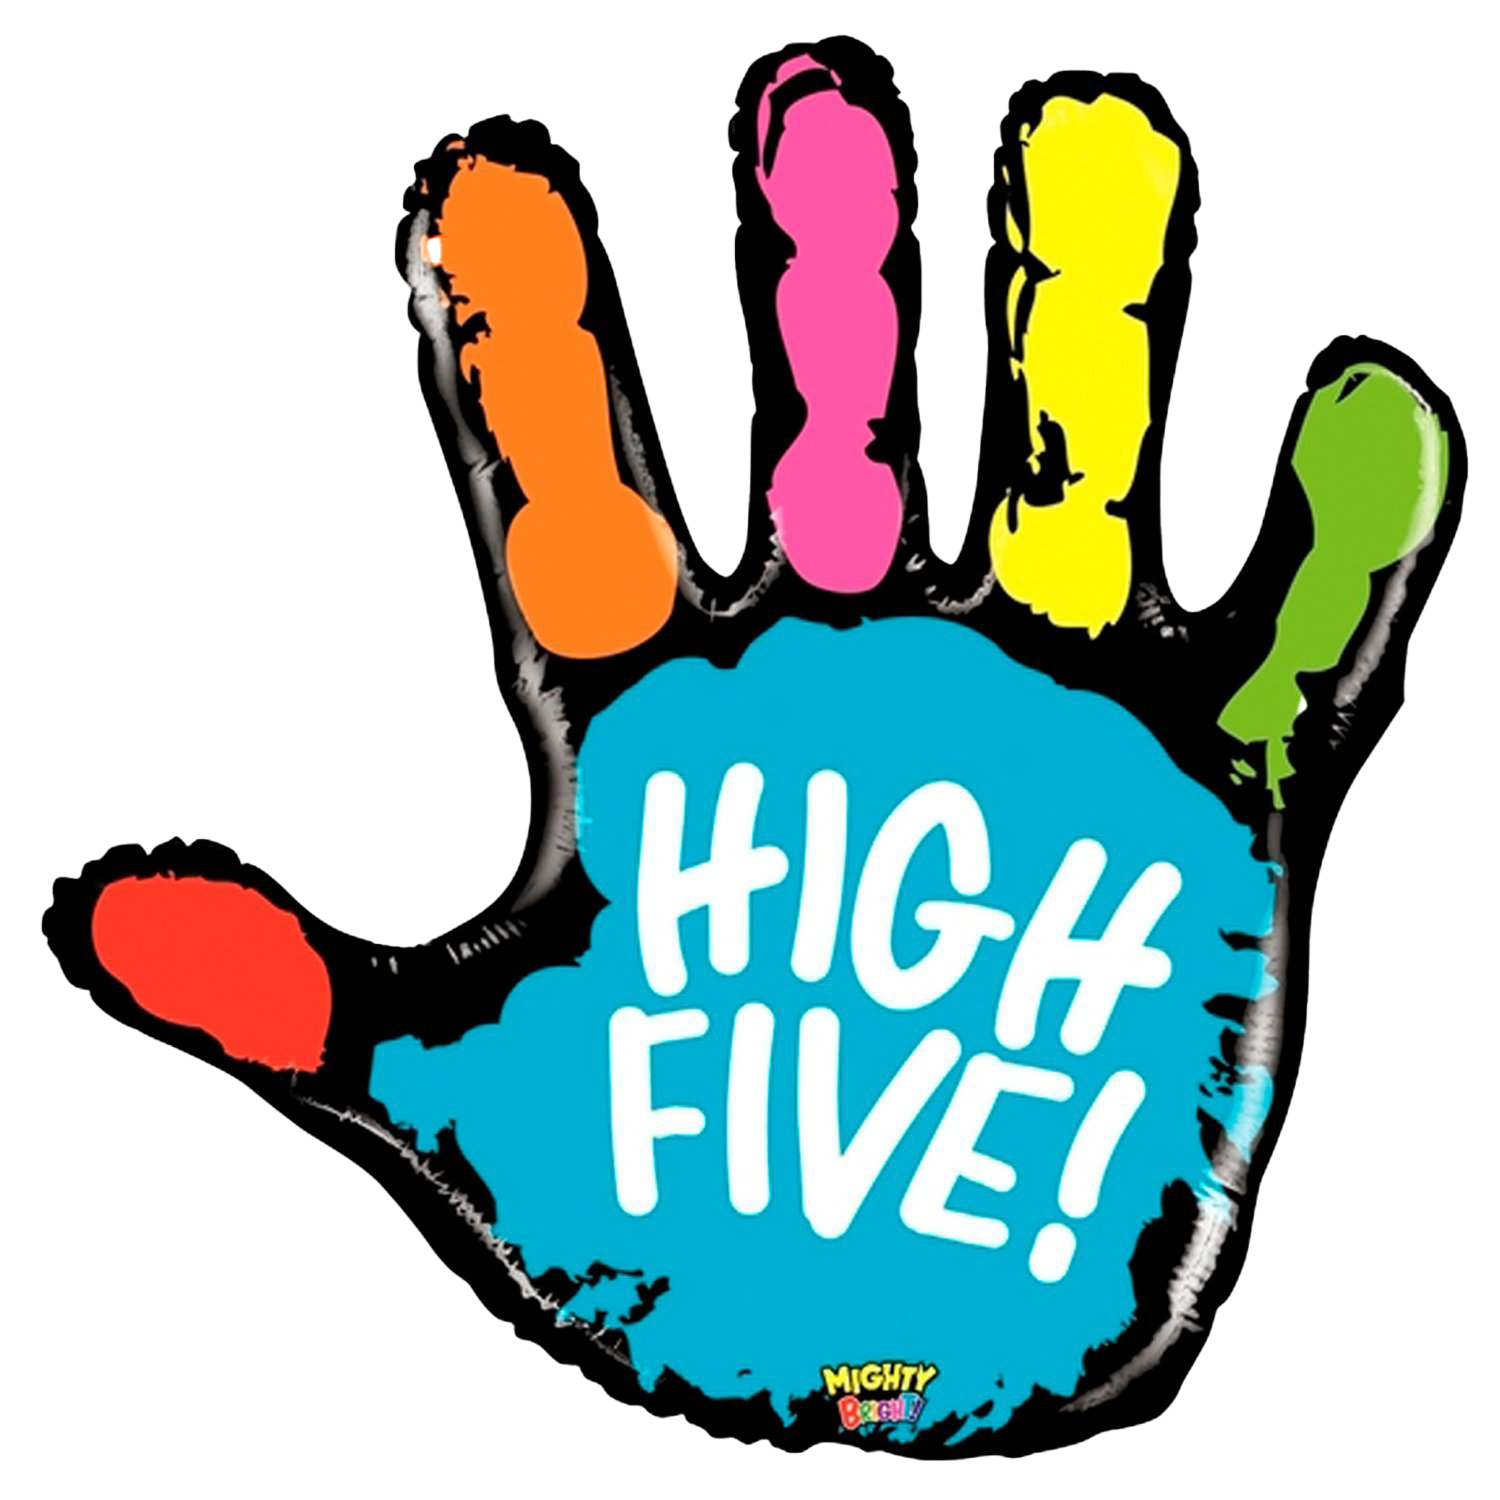 High Five. High Five картинка. Пятюня значок. Пятюня картинки.